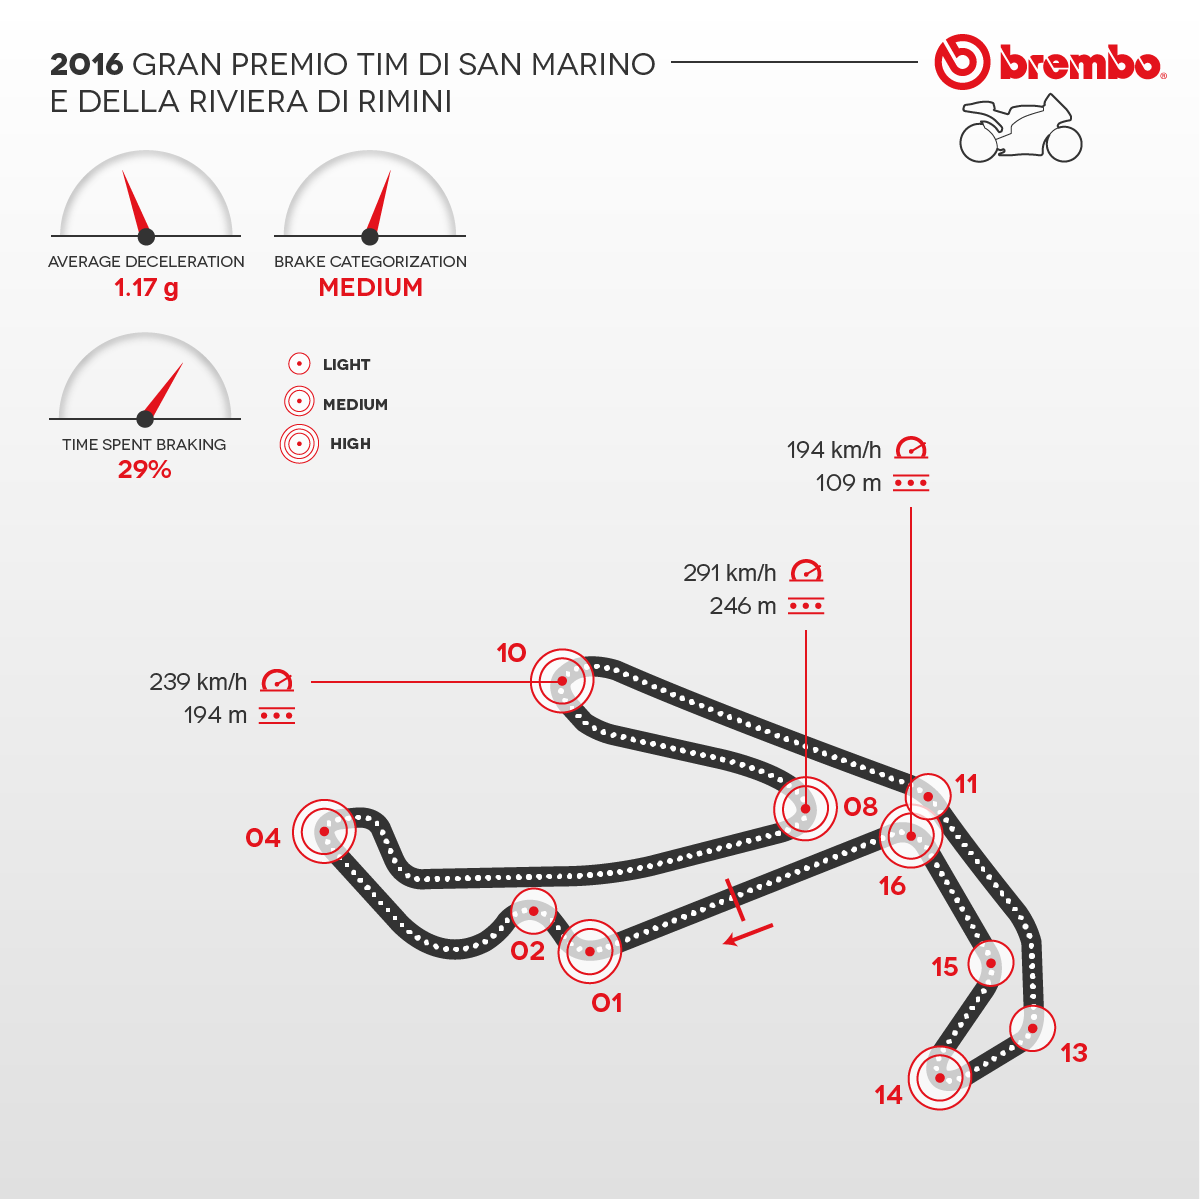 Representación detallada del circuito de San Marino y la Riviera de Rimini 2016 con curvas detalles Brembo